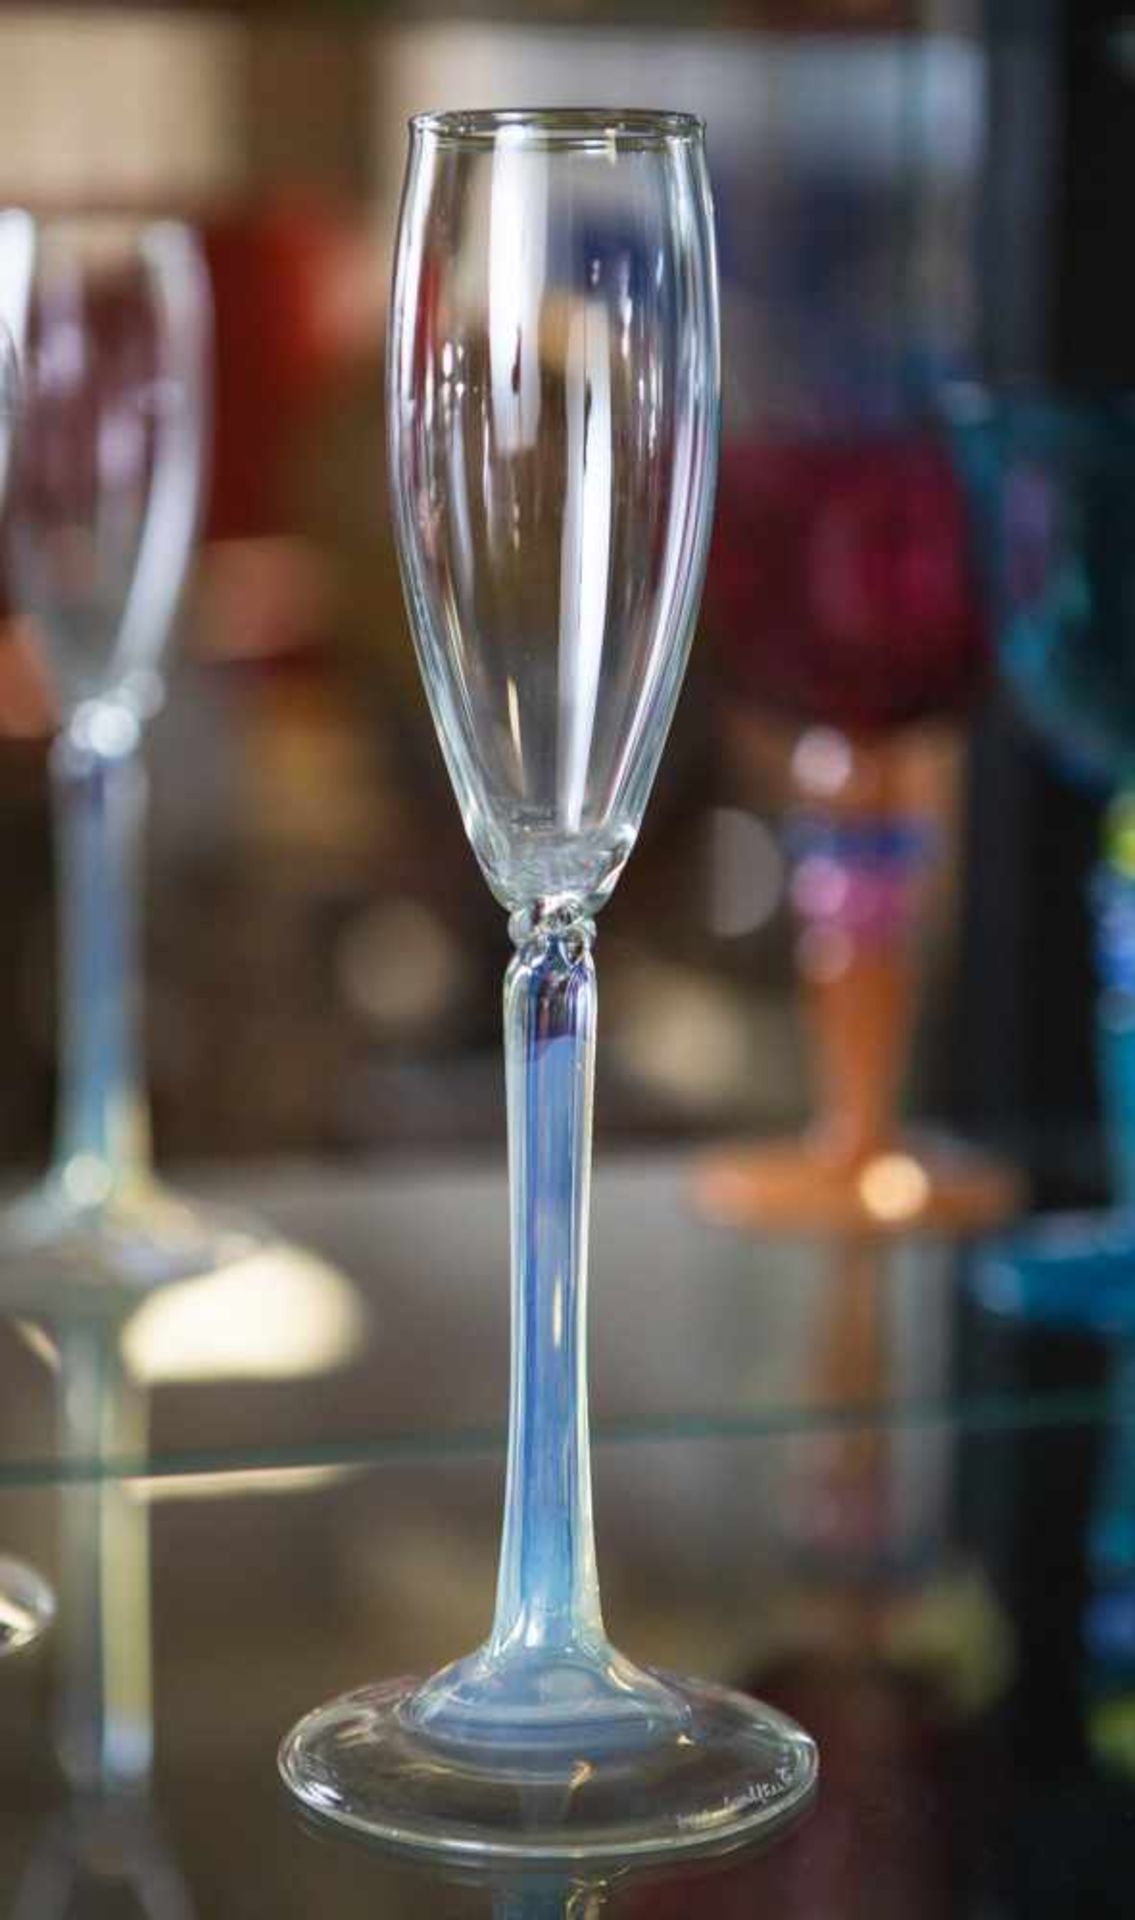 Sektglas, Entwurf Vera Walther, farbloses Glas, Schaft leicht blau eingefärbt u. am oberenEnde